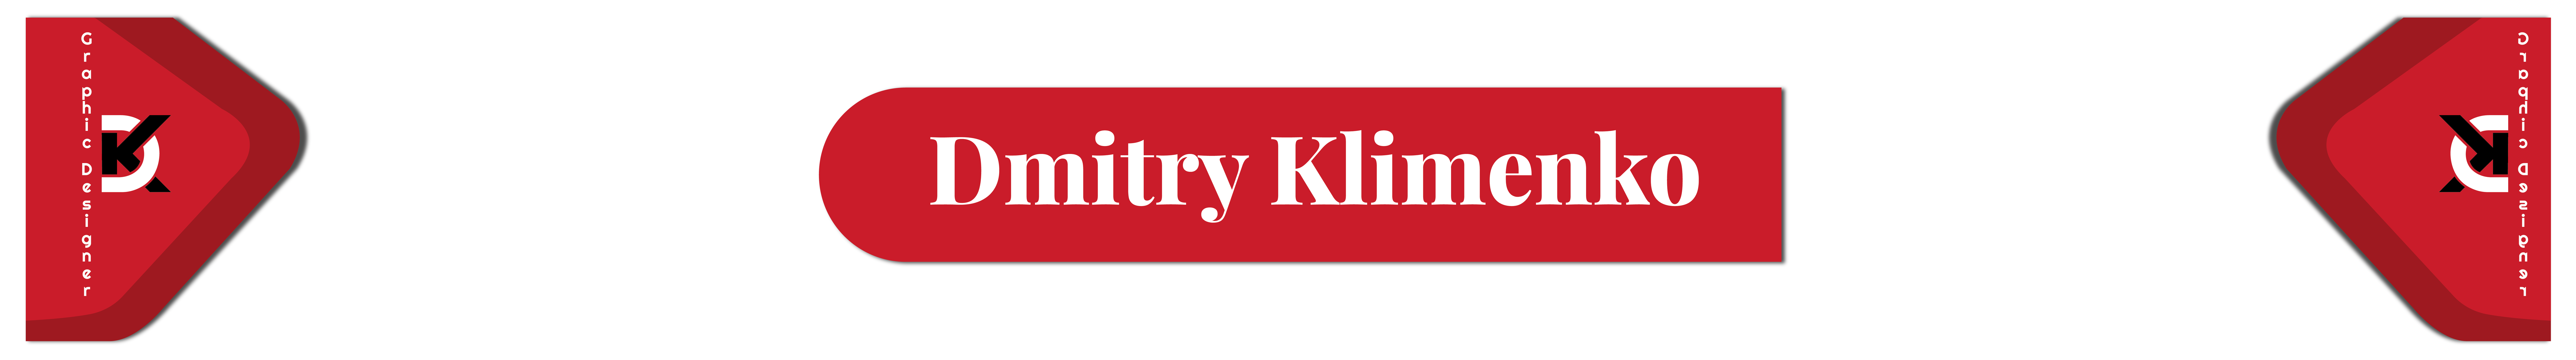 Dmitry Klimenko's profile banner